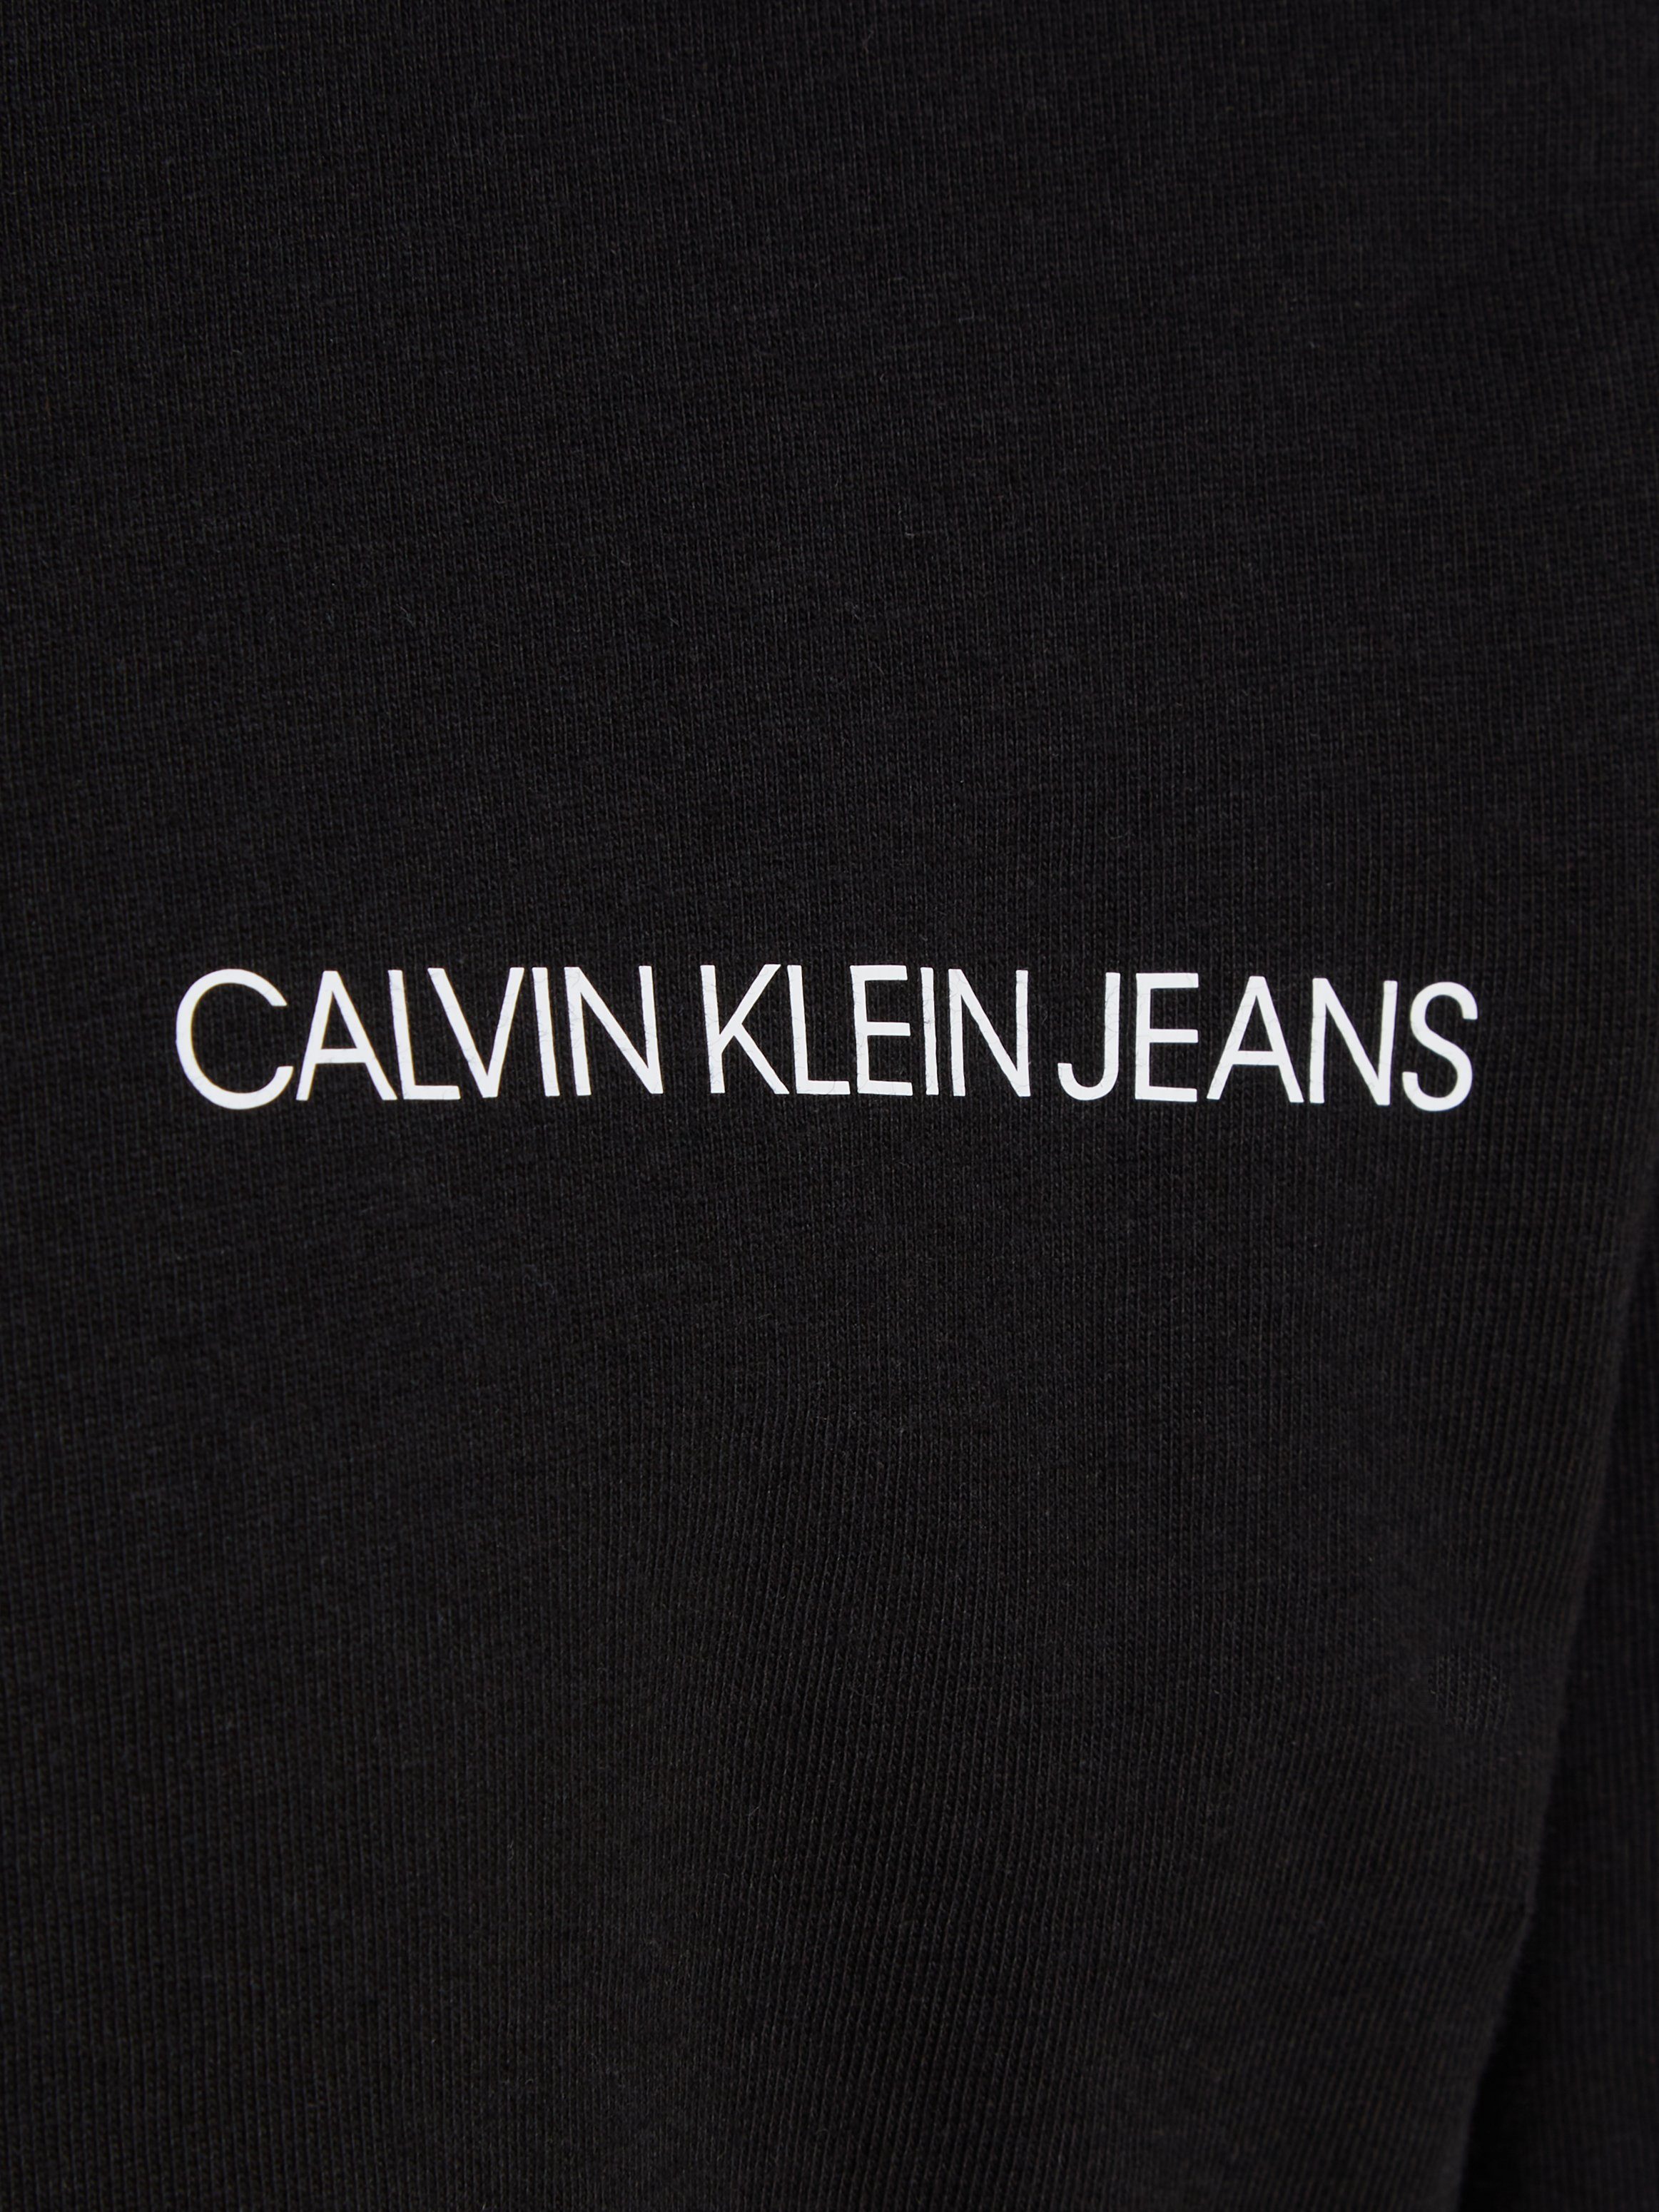 Calvin Klein Jeans T Ck für Black Langarmshirt SHIRT INST. Kinder LS CHEST